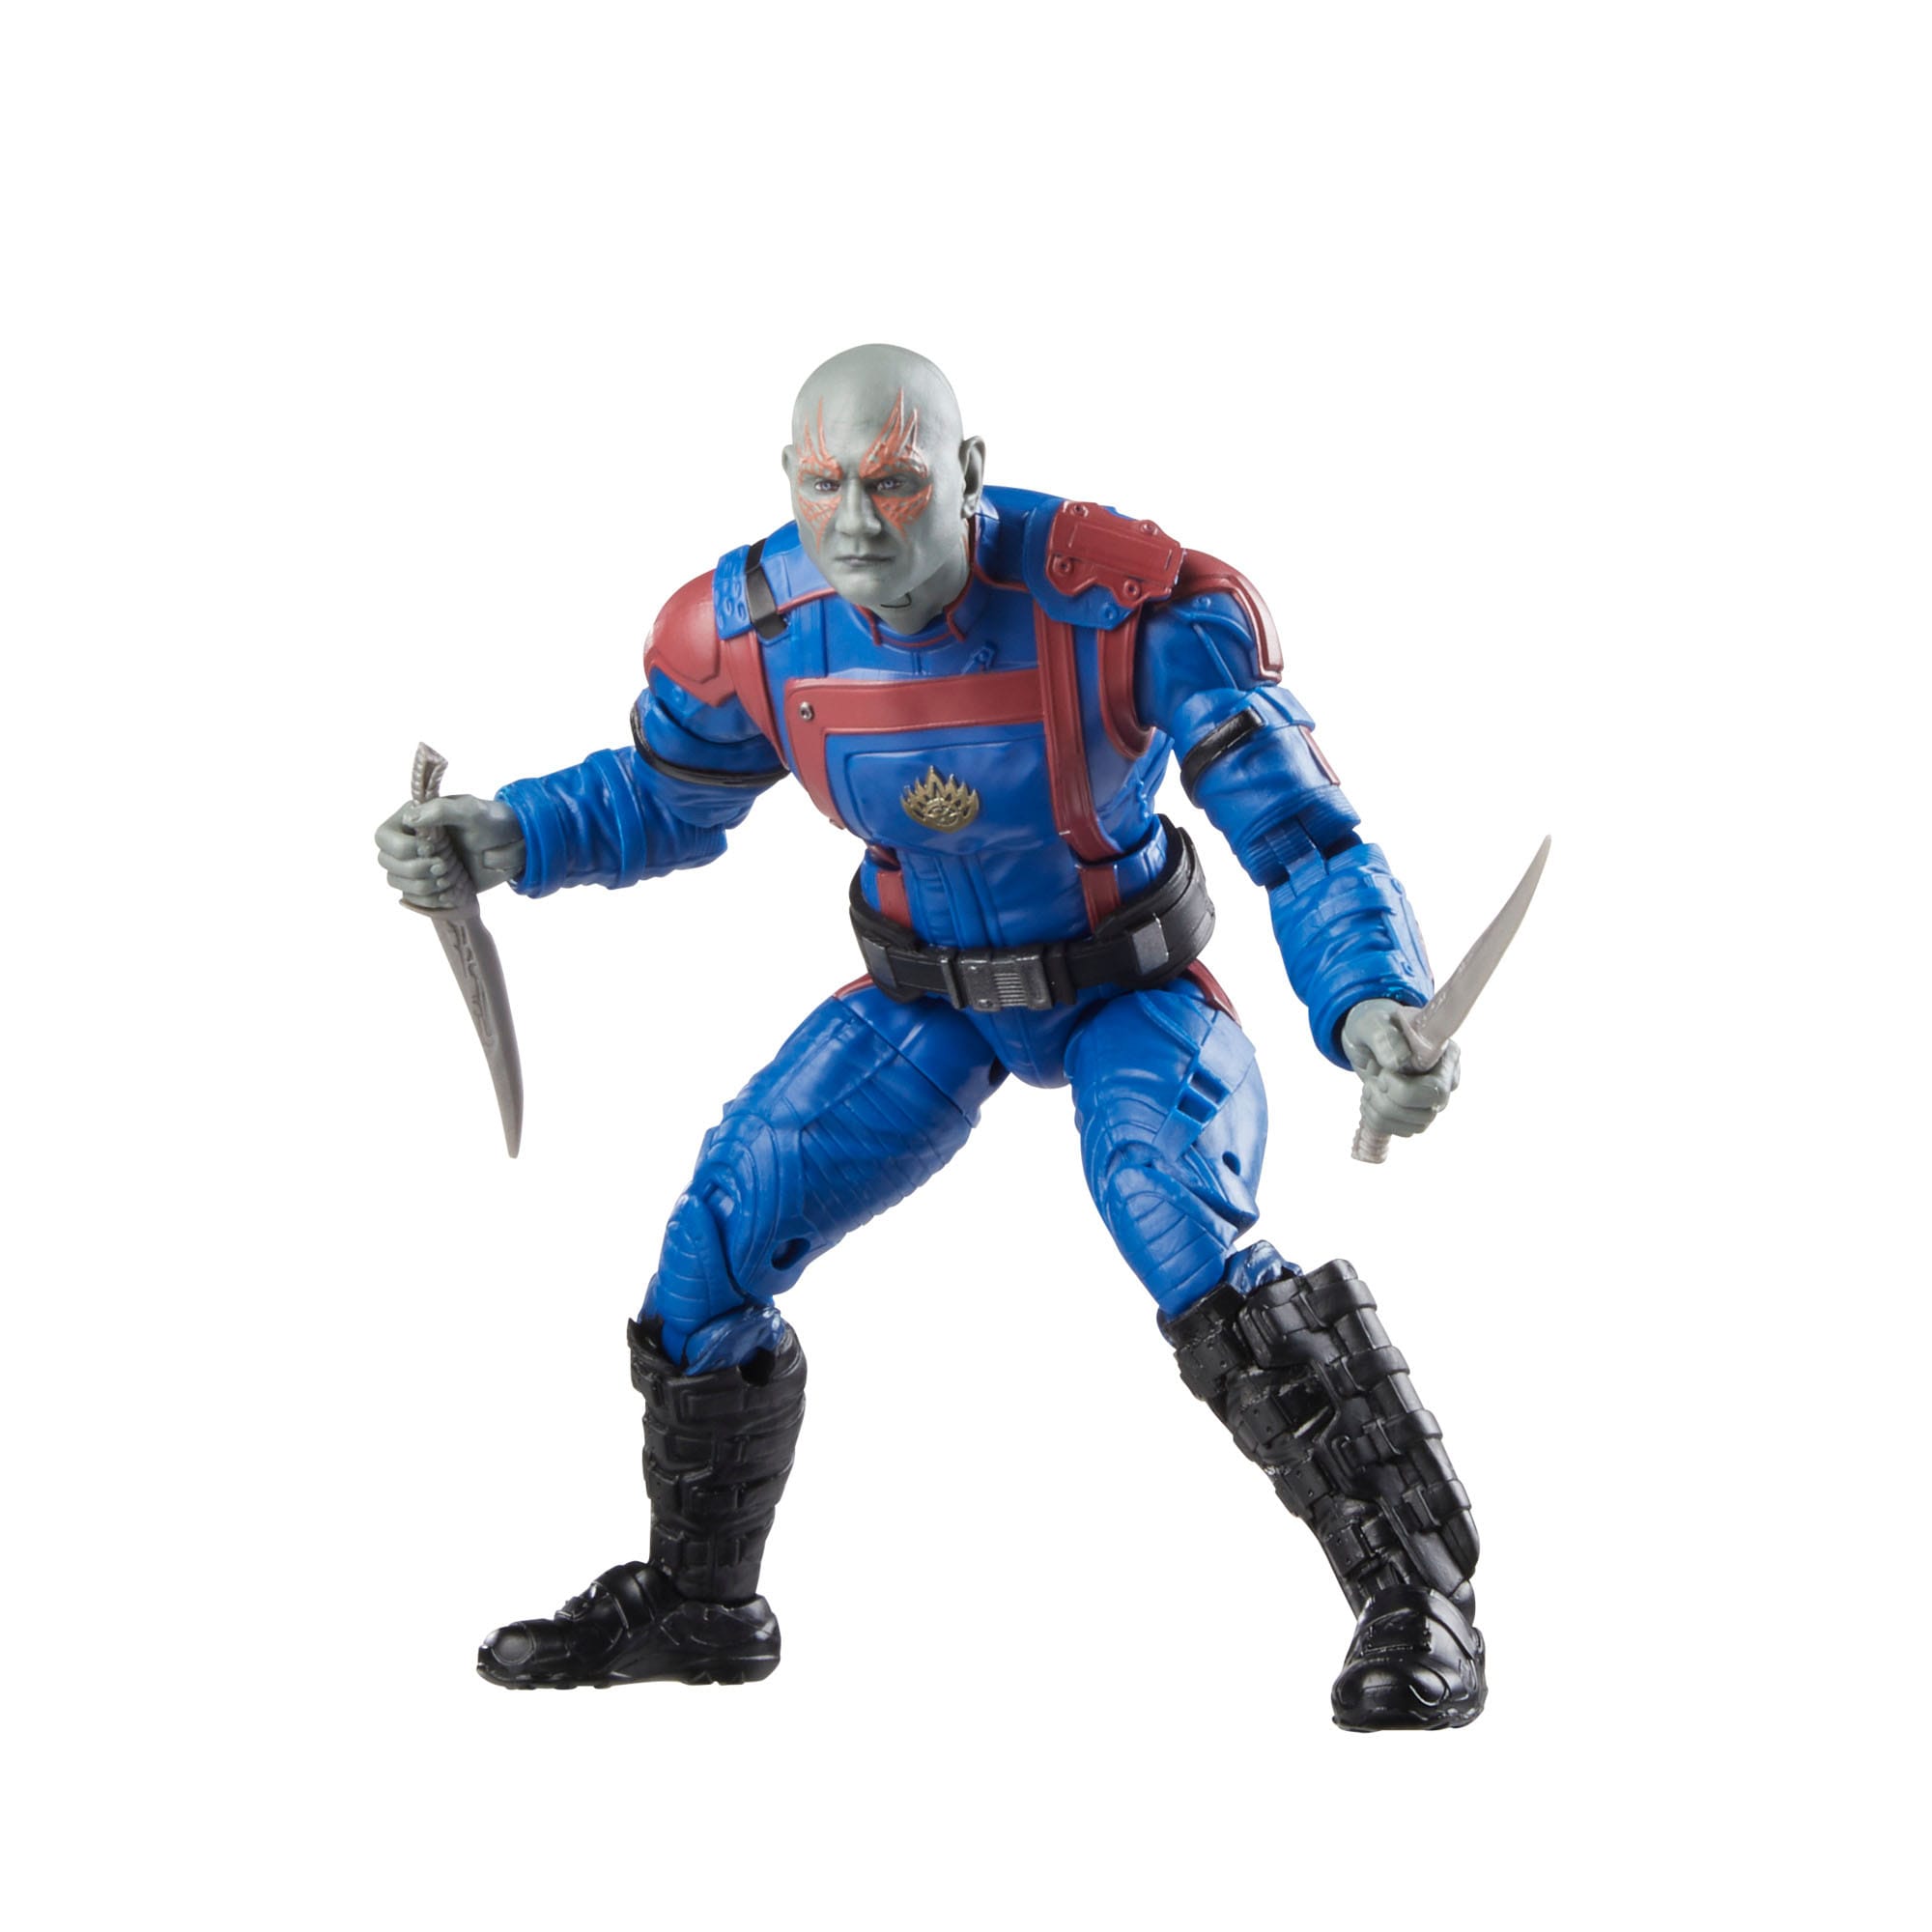 Guardians of the Galaxy Comics Marvel Legends Actionfigur Drax 15 cm HASF6603 5010994179854